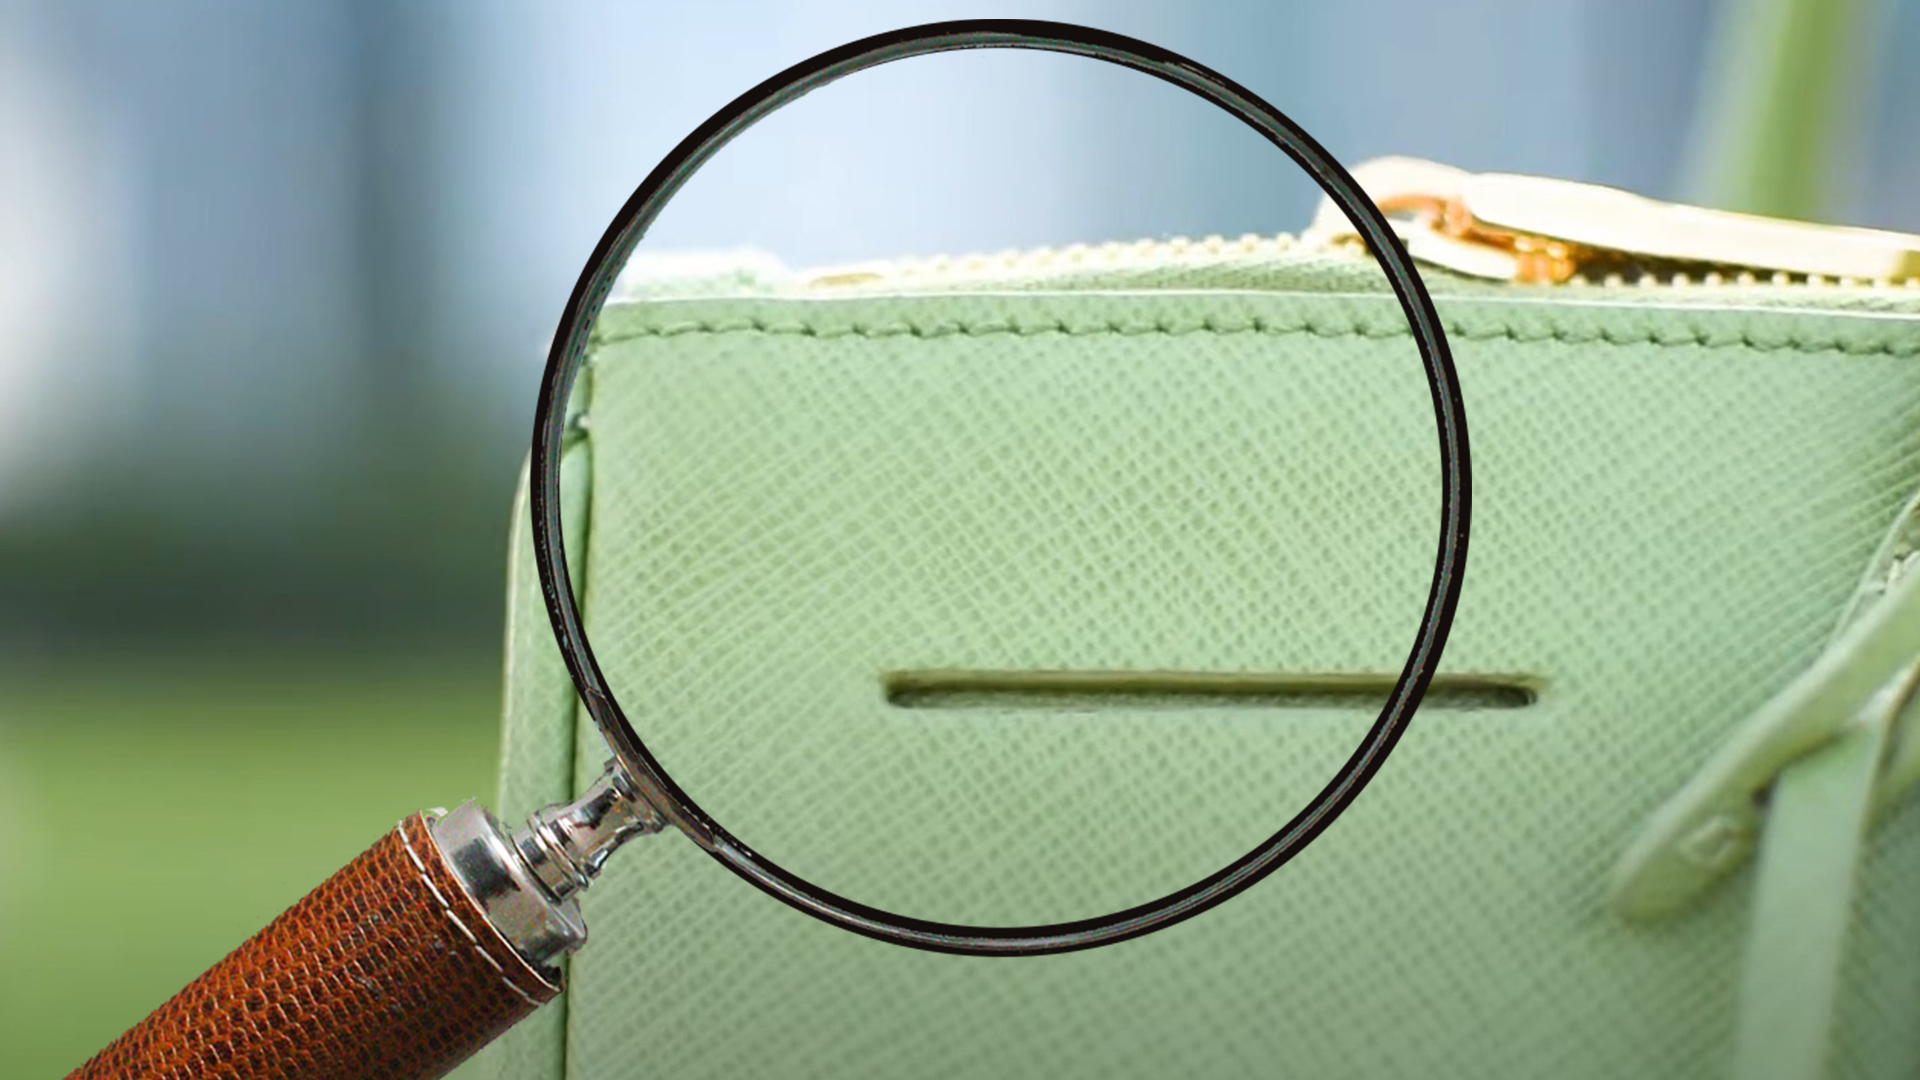 How to Spot a Fake Prada Bag - The Study